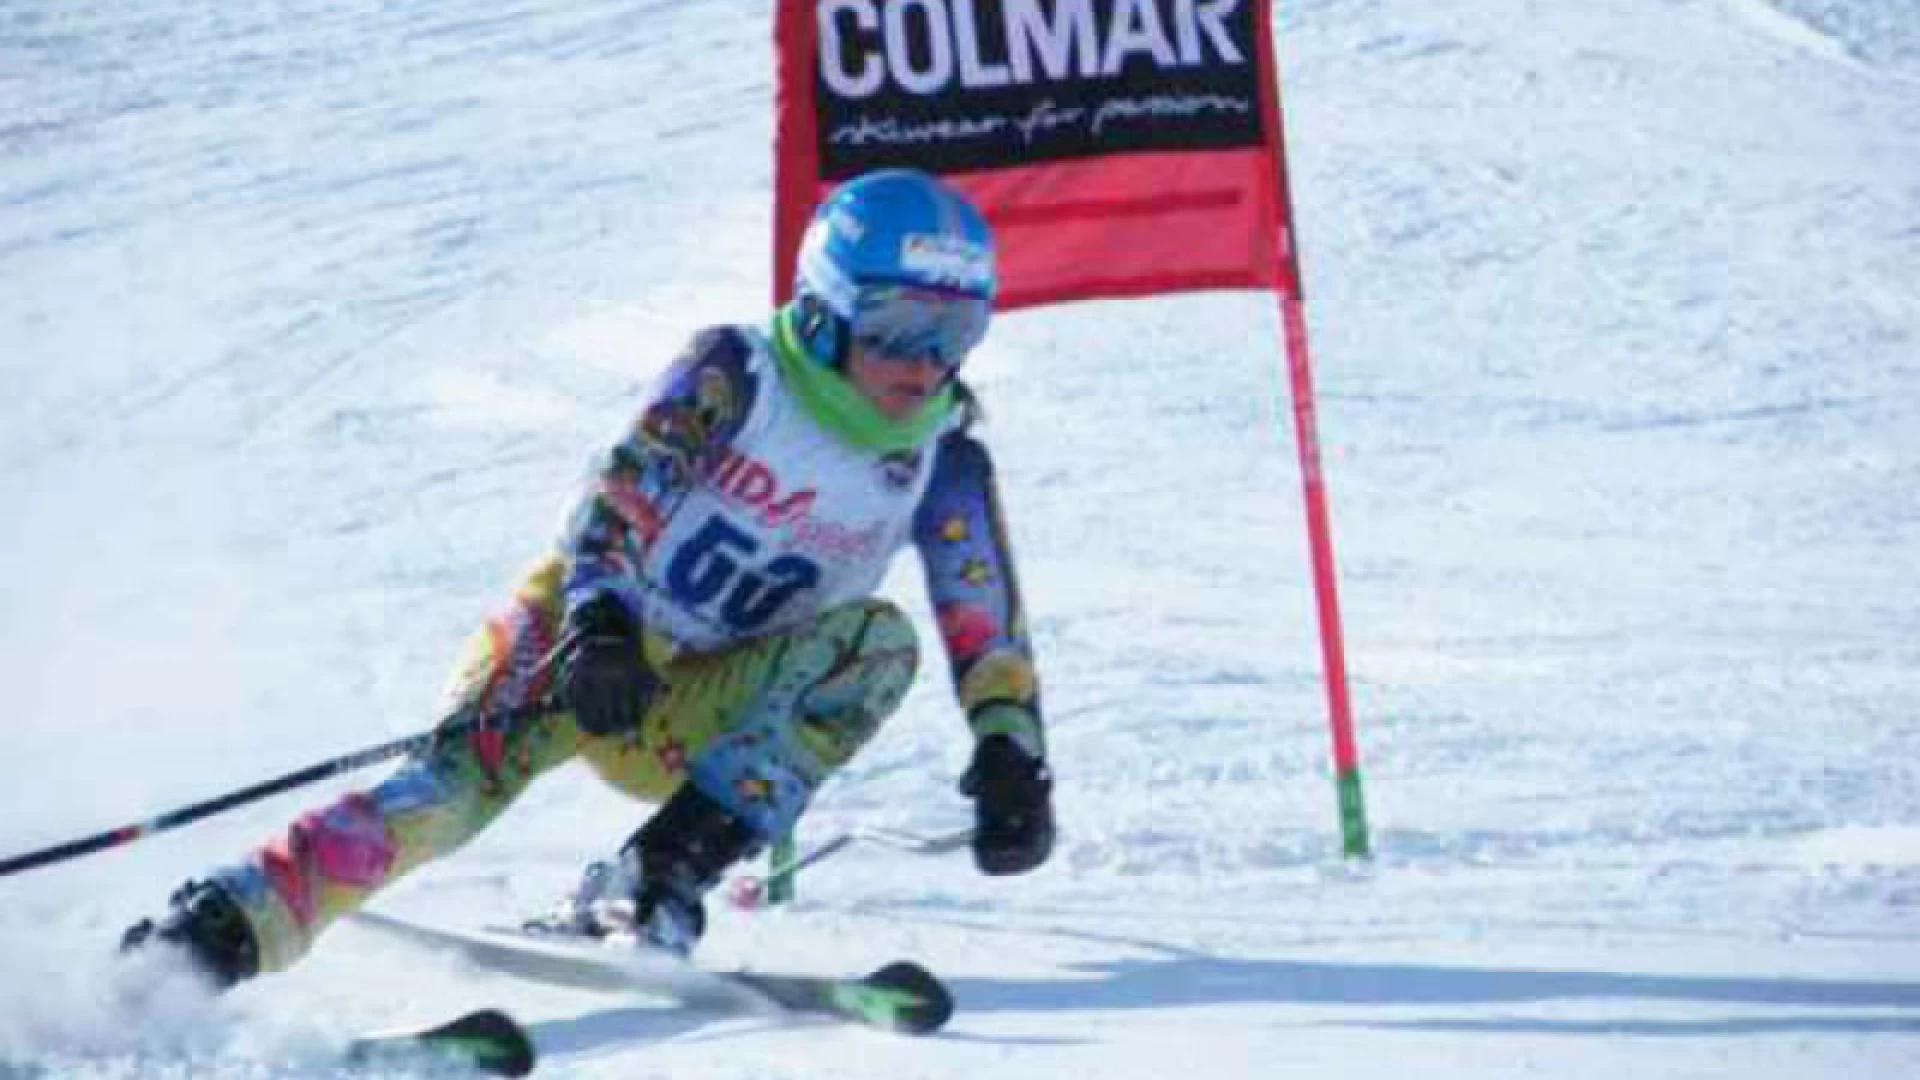 Campionati mondiali studenteschi di sci, presenti ben 17 atleti dell’Istituto Patini-Liberatore di Castel Di Sangro.